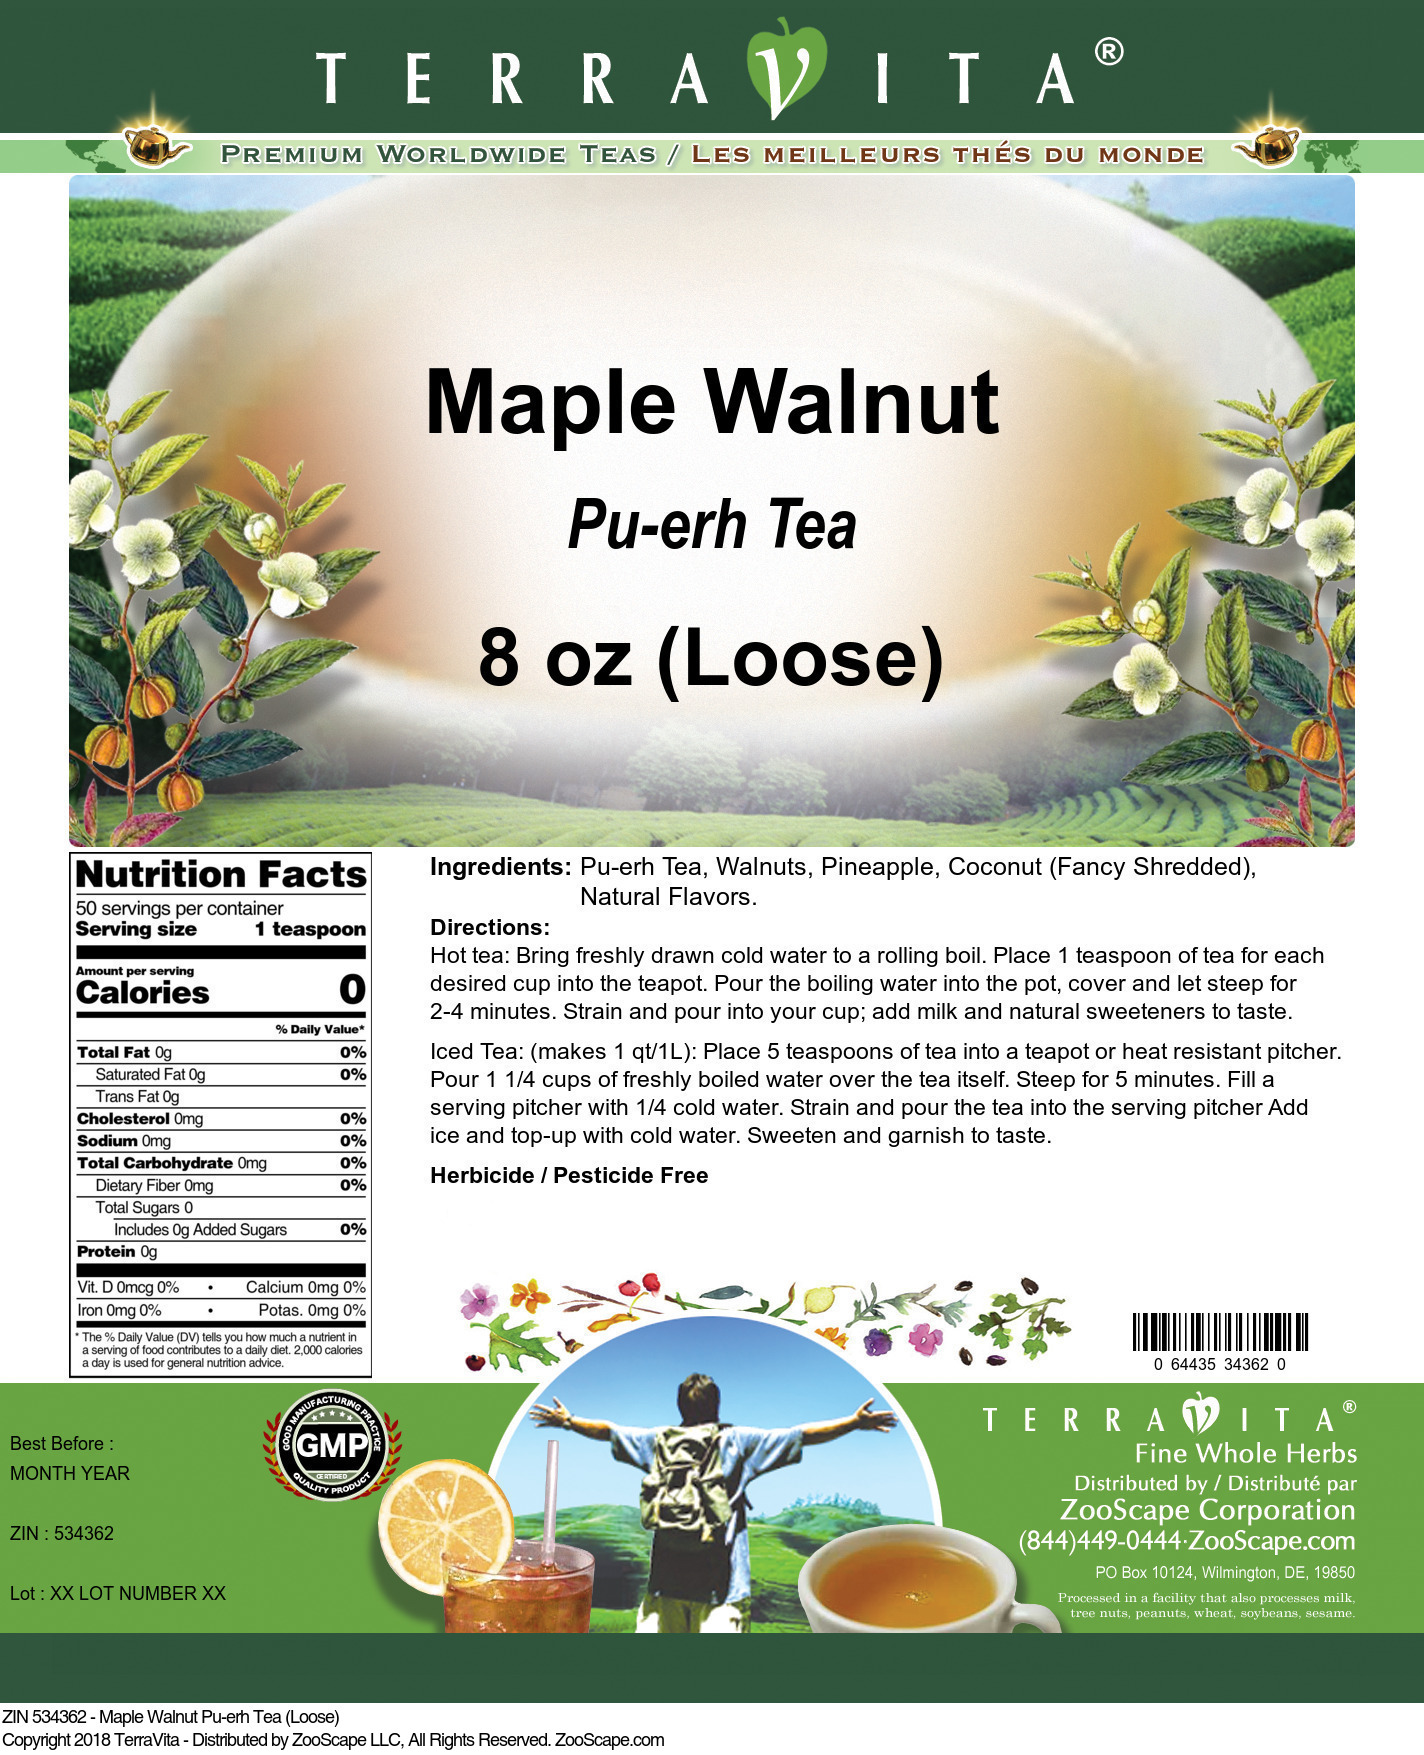 Maple Walnut Pu-erh Tea (Loose) - Label